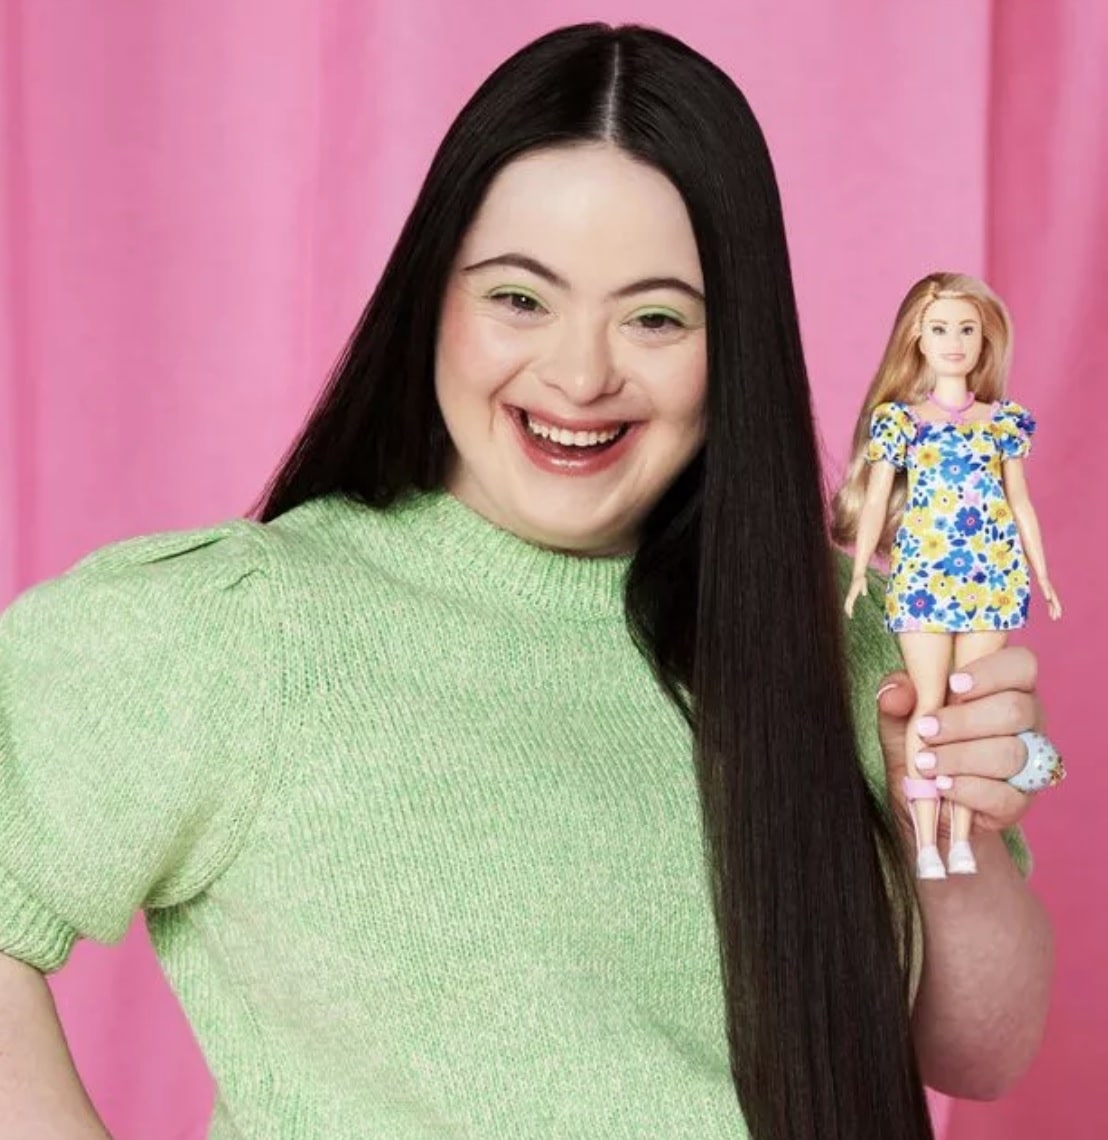 A fost lansată prima păpușă Barbie cu Sindromul Down. Are fața rotunjită și nasul mai turtit: "Copiii vor învăța că fiecare om este diferit în felul lui" 